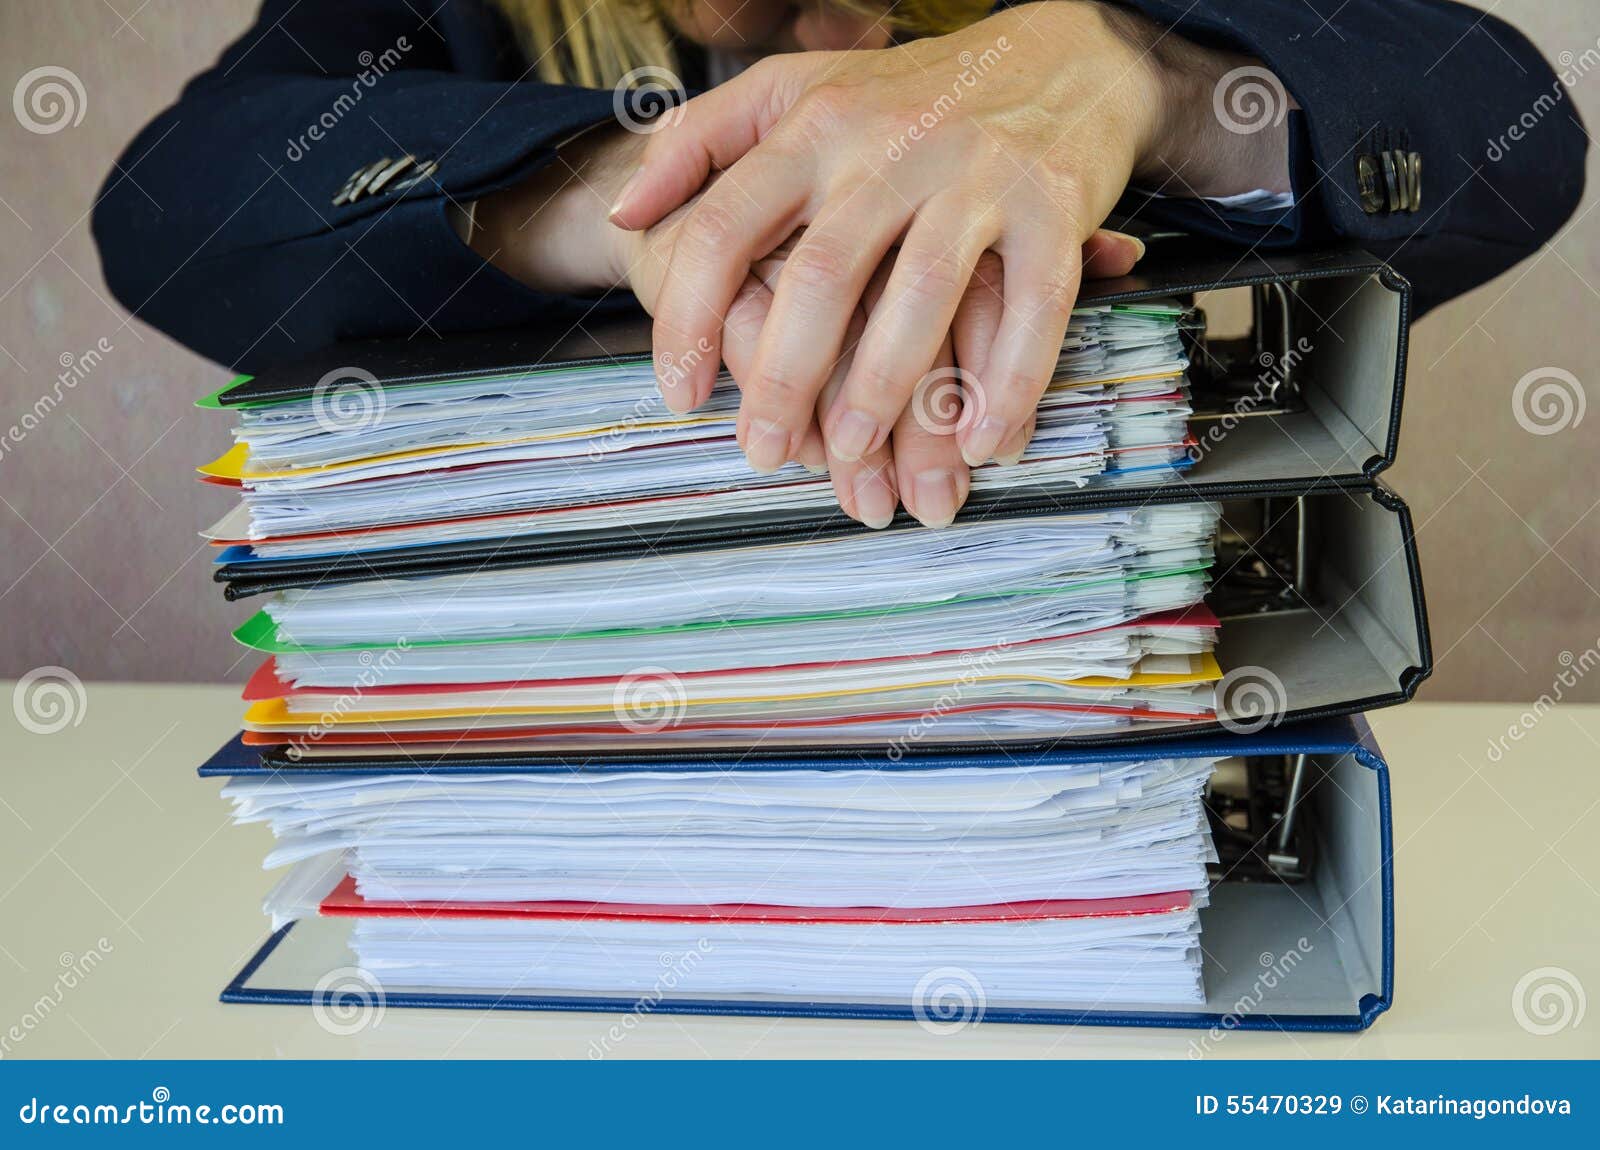 Много папок сразу. Много папок в руках. Кучей папок в руках. Несет много папок с документами. Папка для бумаг в руках картинка.